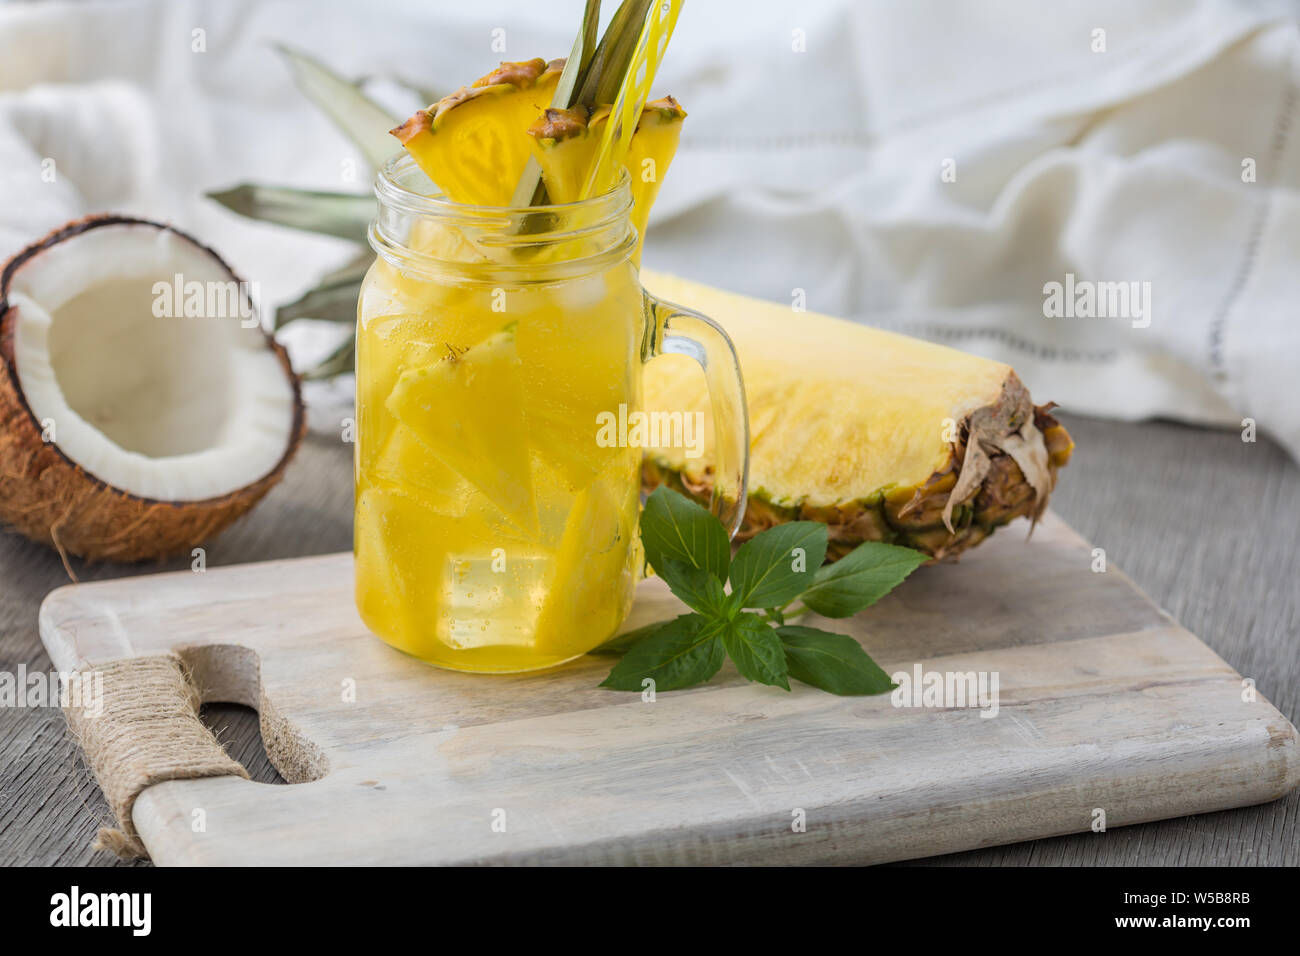 Accueil fizzy drink avec de la glace et de l'ananas sur un fond clair, selective focus. Photo de boisson rafraîchissante faite maison Banque D'Images